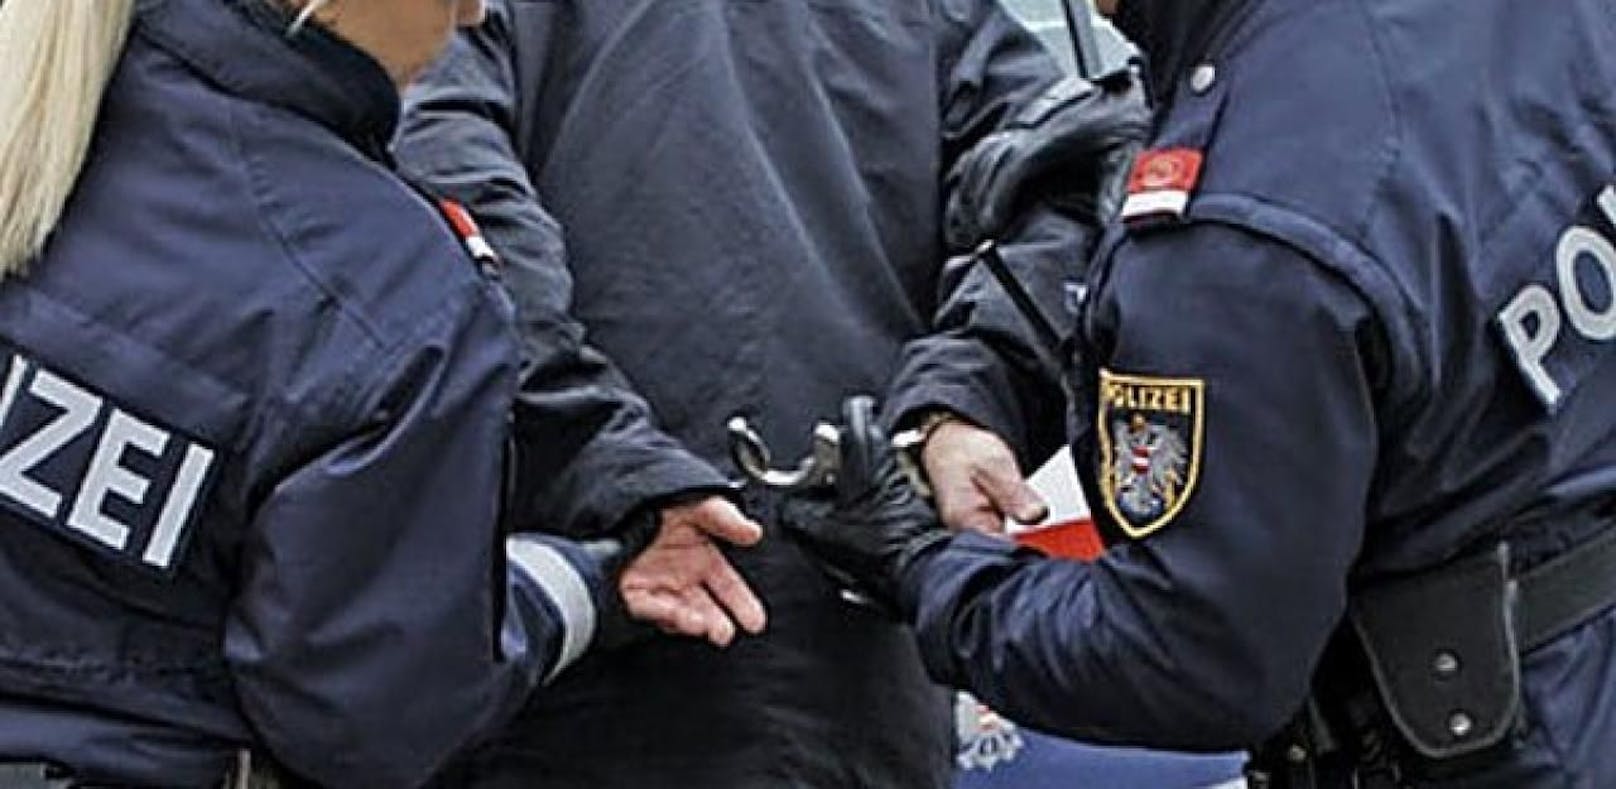 Ermittler des Landeskriminalamts Wien konnten fünf Räuber im Alter von 18 bis 21 Jahren erfolgreich festnehmen (Symbolfoto)